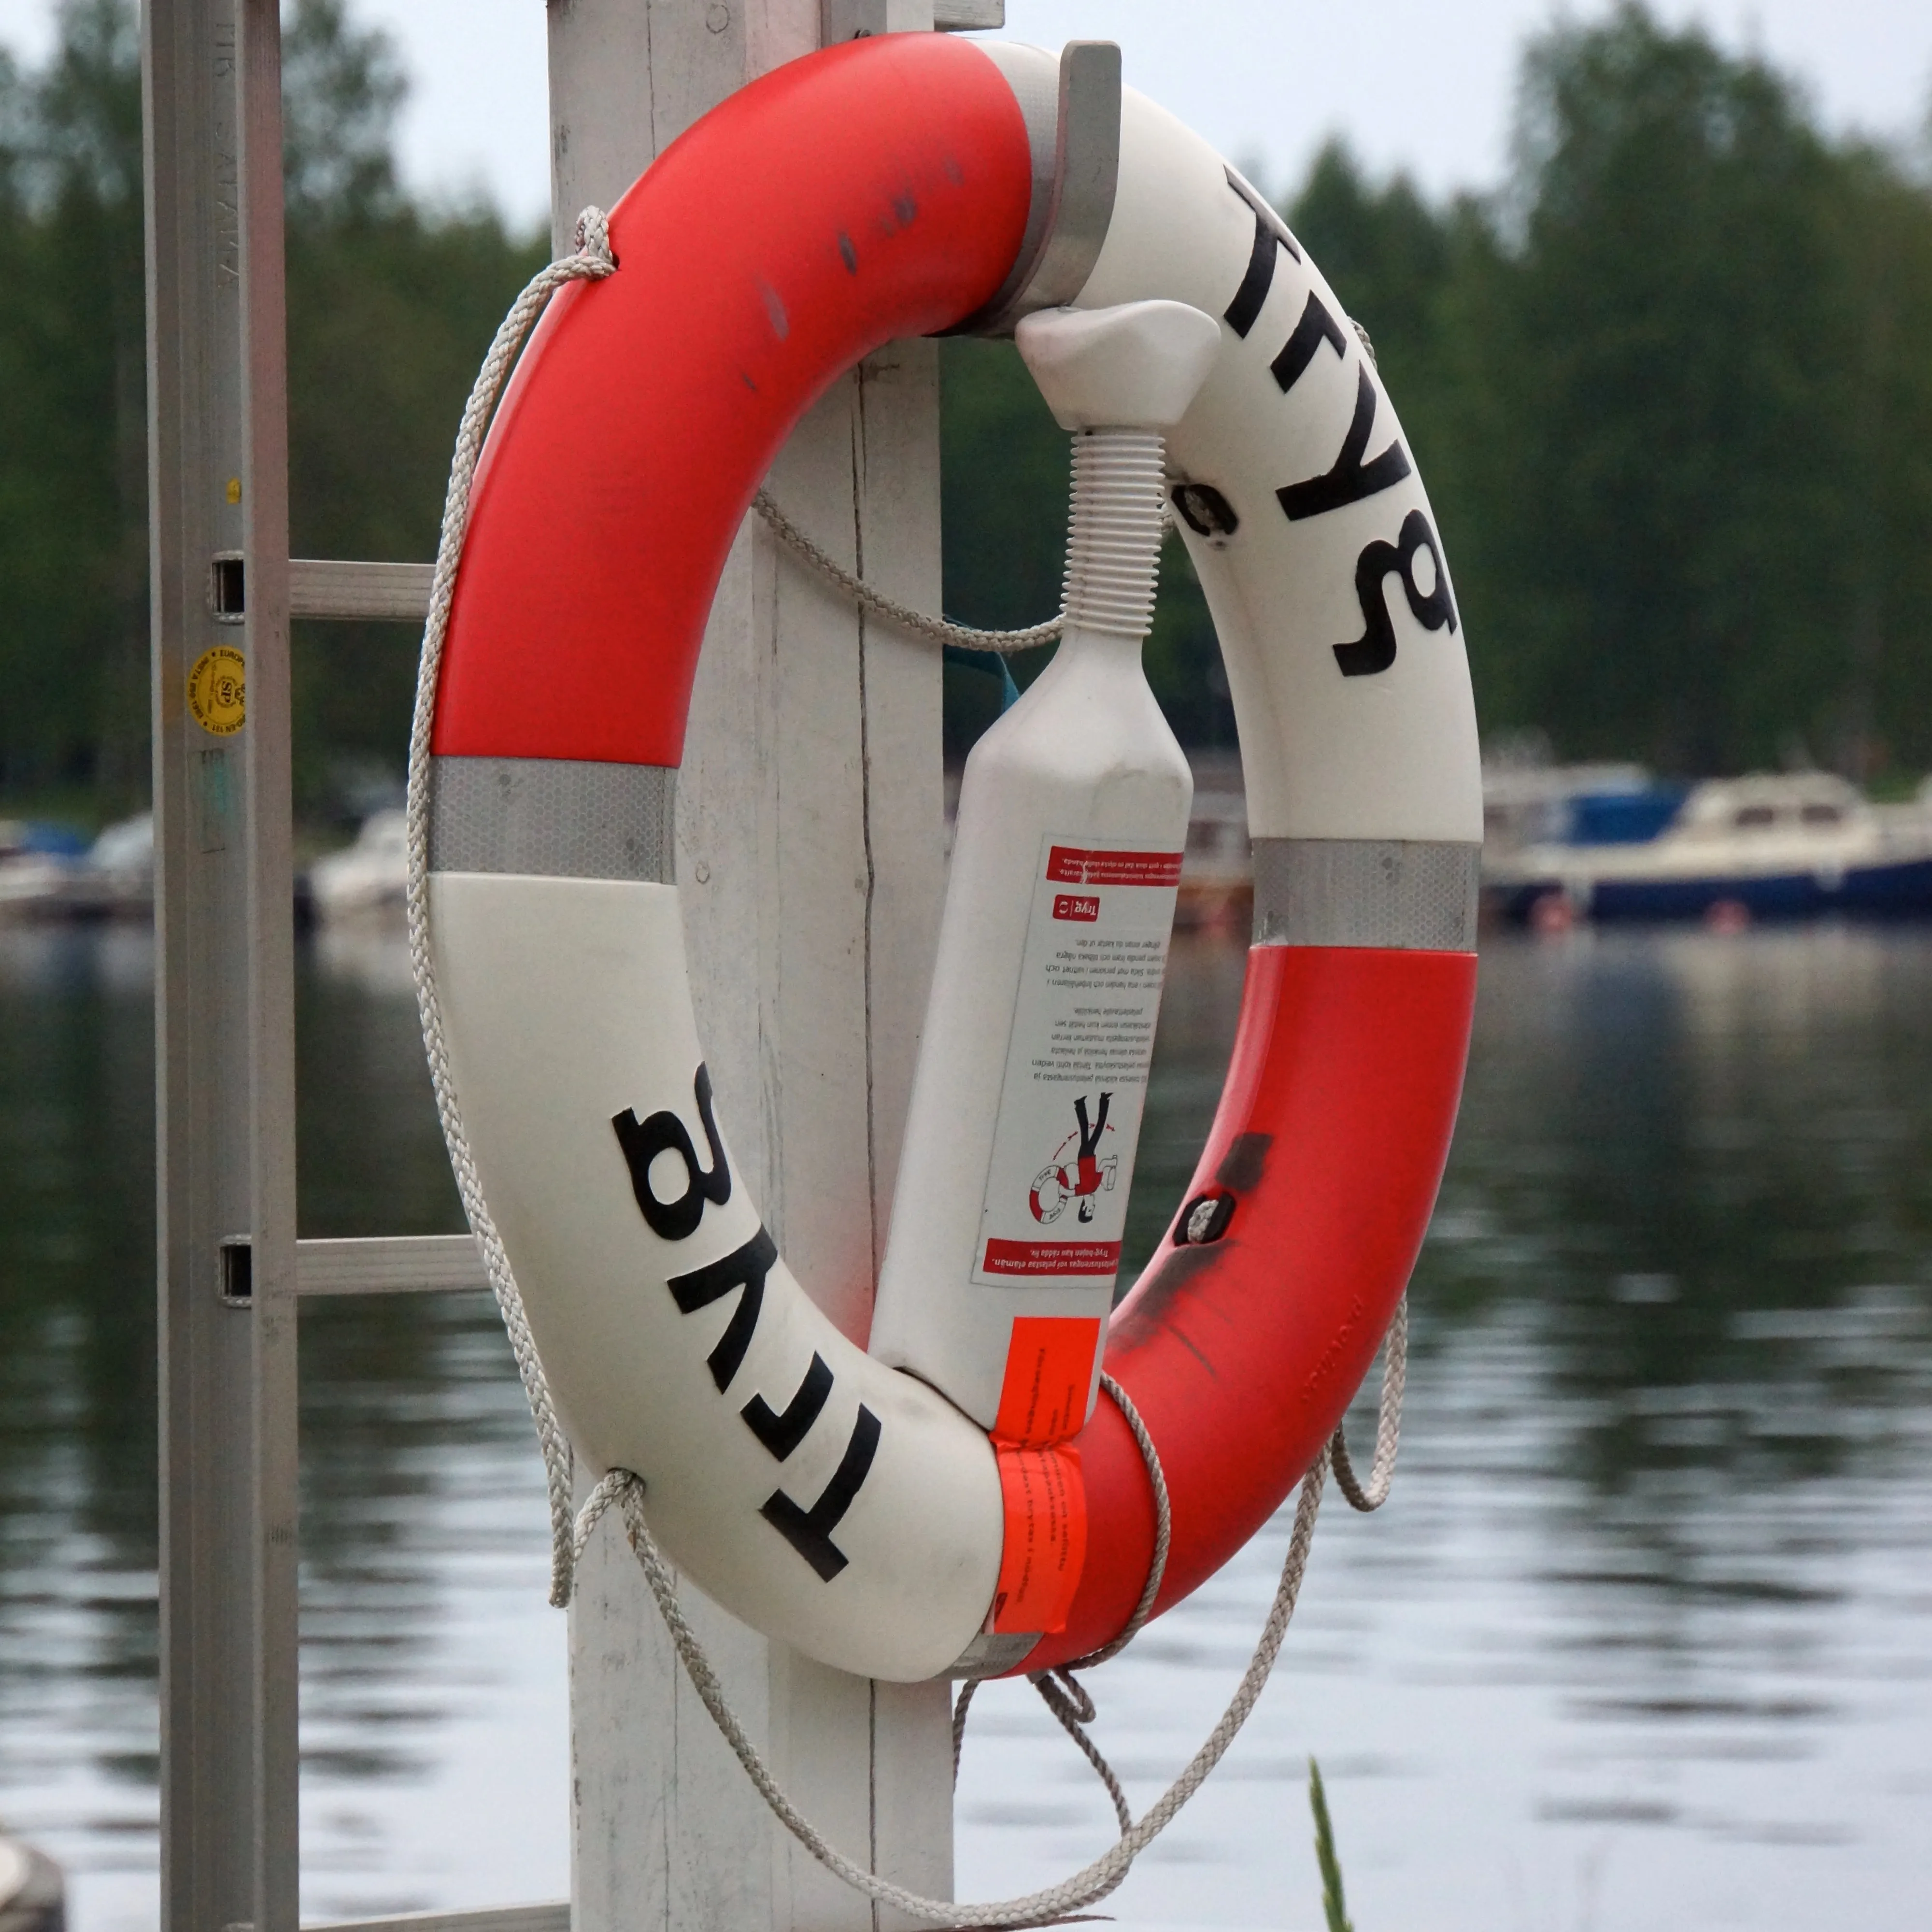 Купить в москве спасательный. Спасательный круг на лодке. Спасательный круг на катере. Буй спасательный надувной. Спасательный круг на яхте.